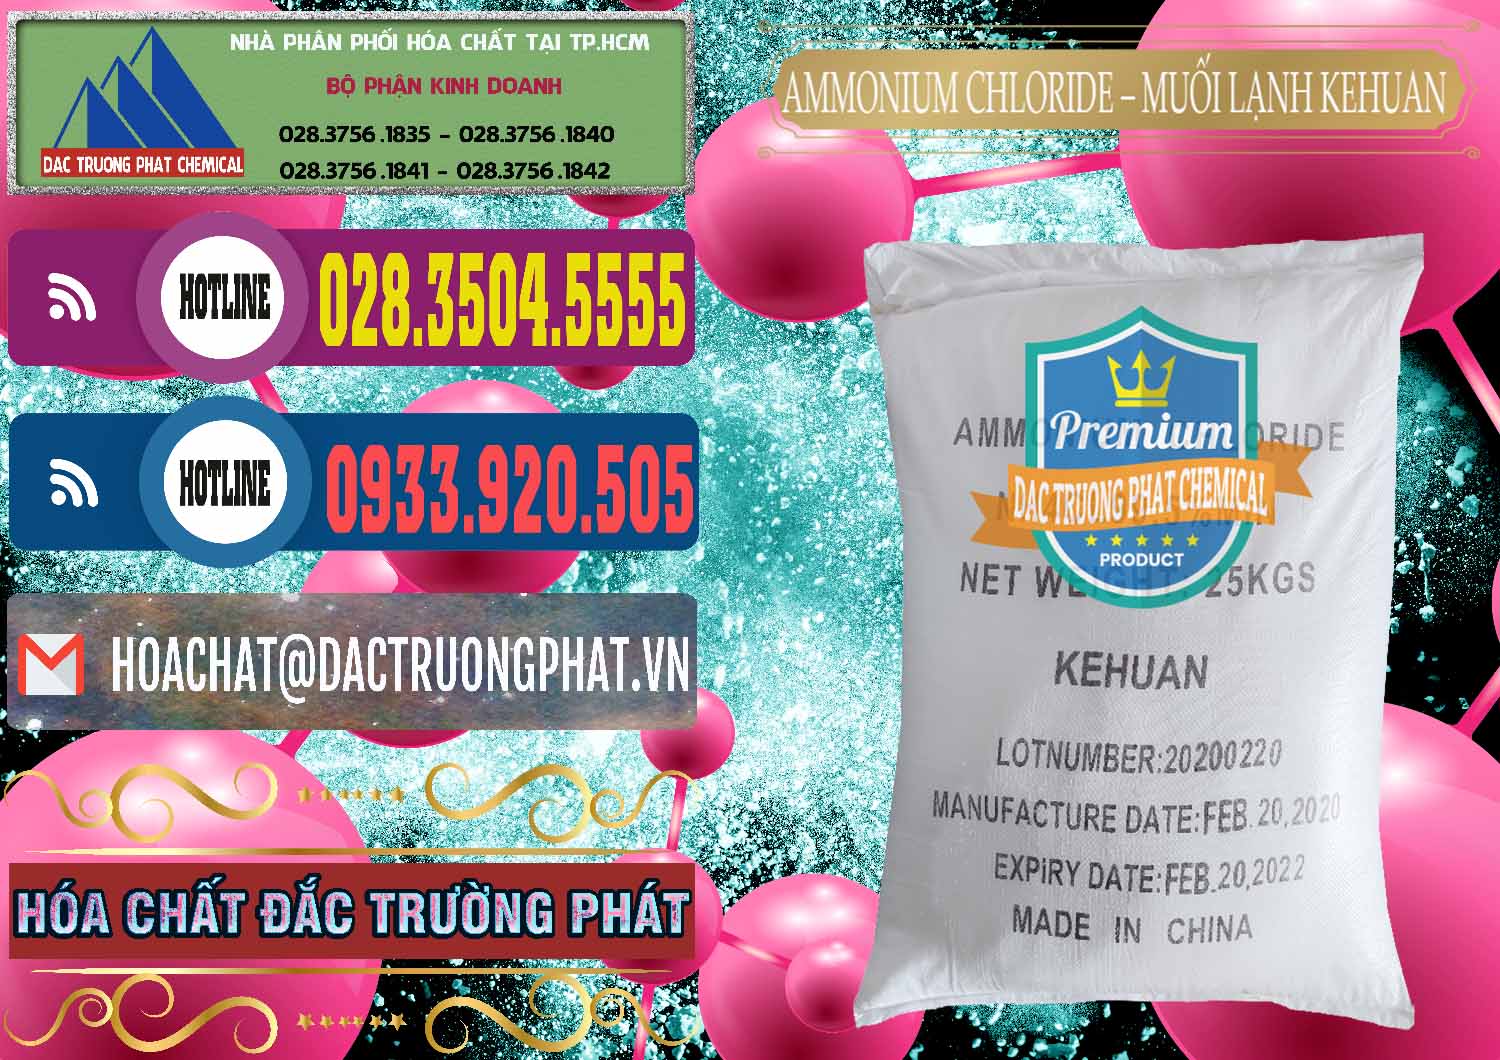 Chuyên cung cấp & bán Ammonium Chloride – NH4CL Muối Lạnh Kehuan Trung Quốc China - 0022 - Đơn vị chuyên cung cấp & nhập khẩu hóa chất tại TP.HCM - muabanhoachat.com.vn